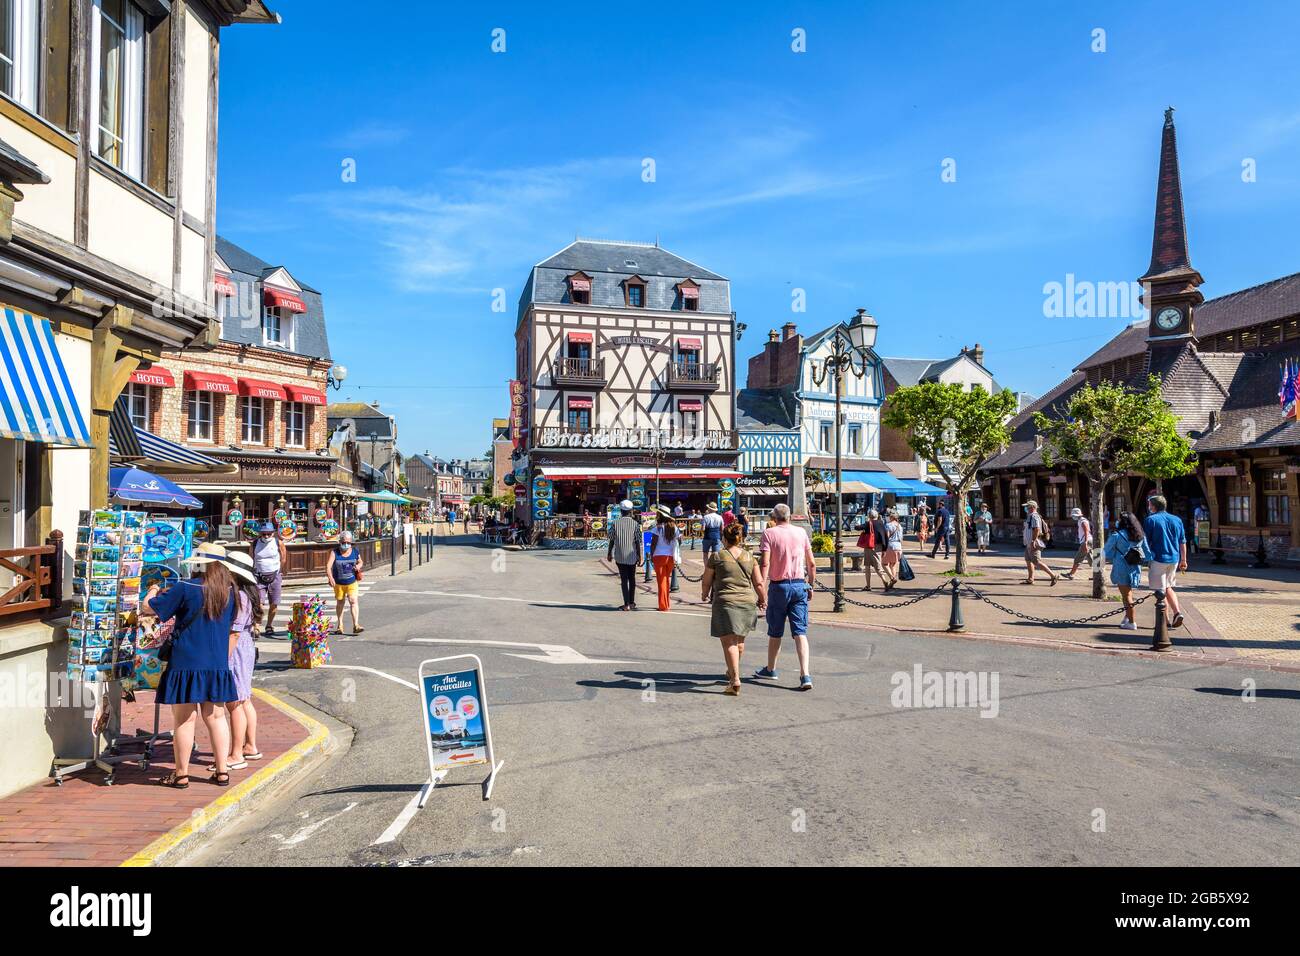 Touristen, die auf dem Marechal Foch Platz in Etretat, Frankreich, flanieren, gesäumt von dem Alten Markt, Fachwerkhäusern, Restaurants, Hotels und Souvenirläden Stockfoto